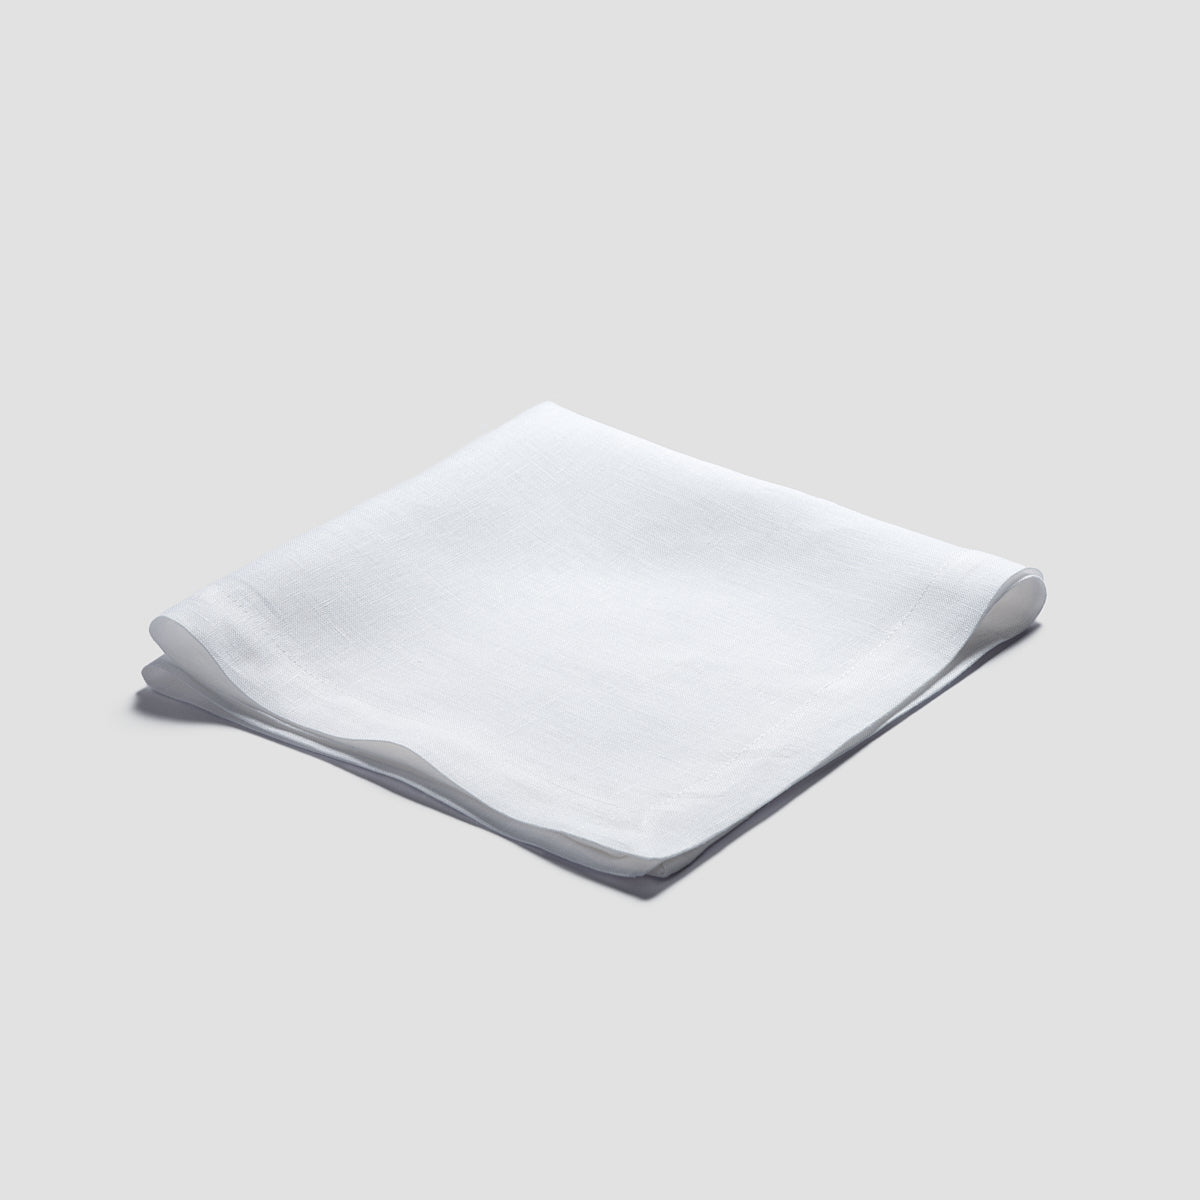 White Linen Napkin Set